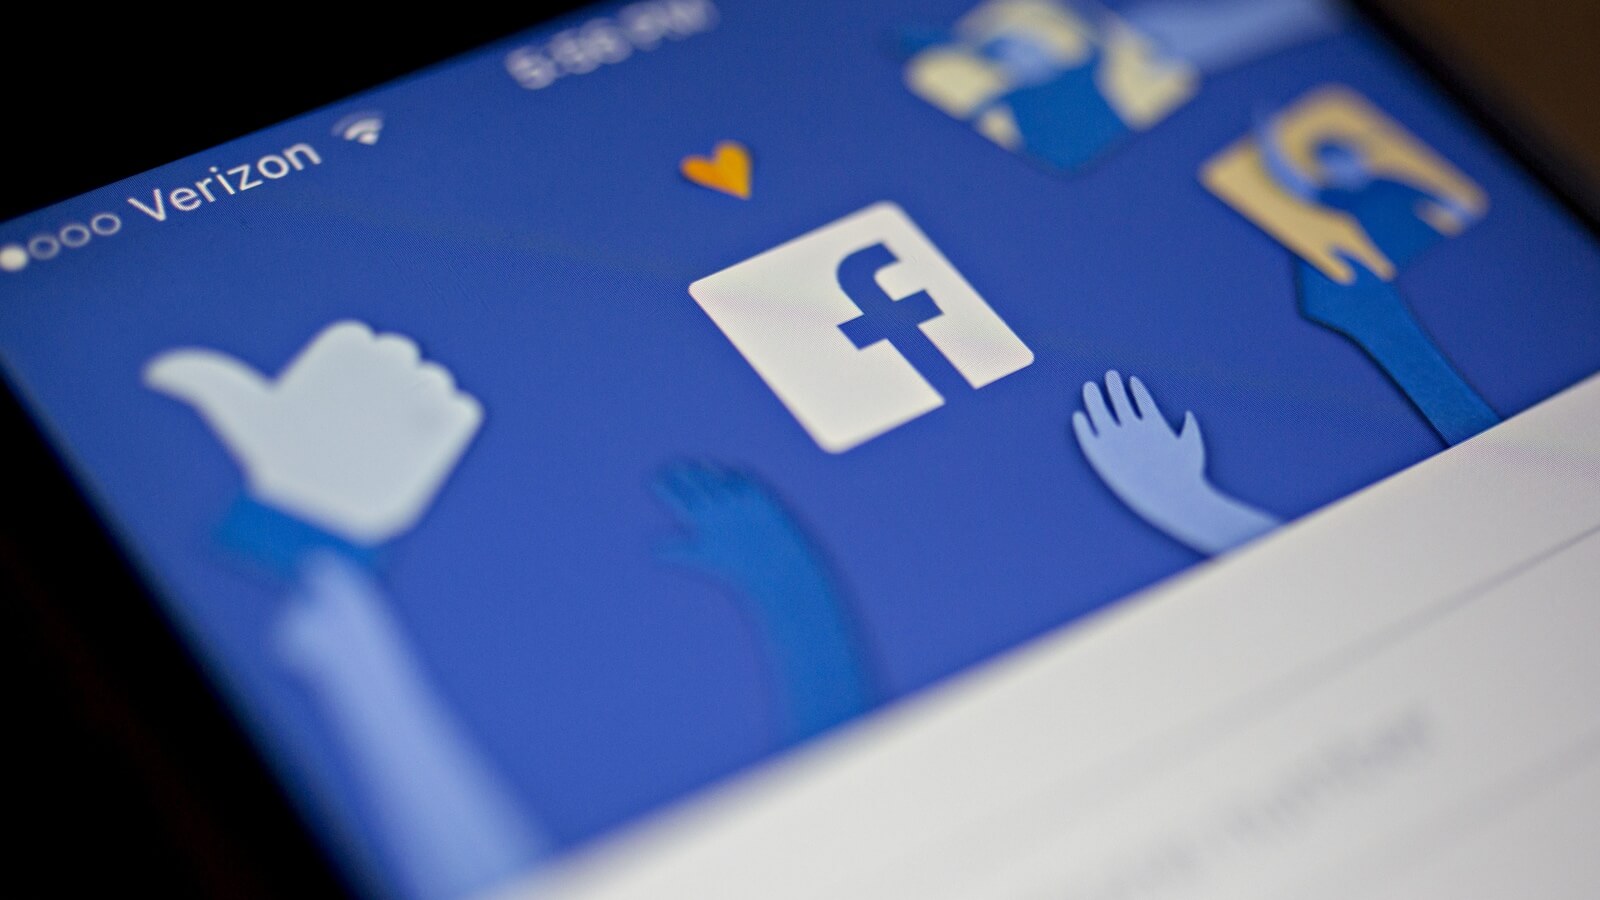 Все главы департаментов антимонопольного комитета открыли аккаунты в Facebook